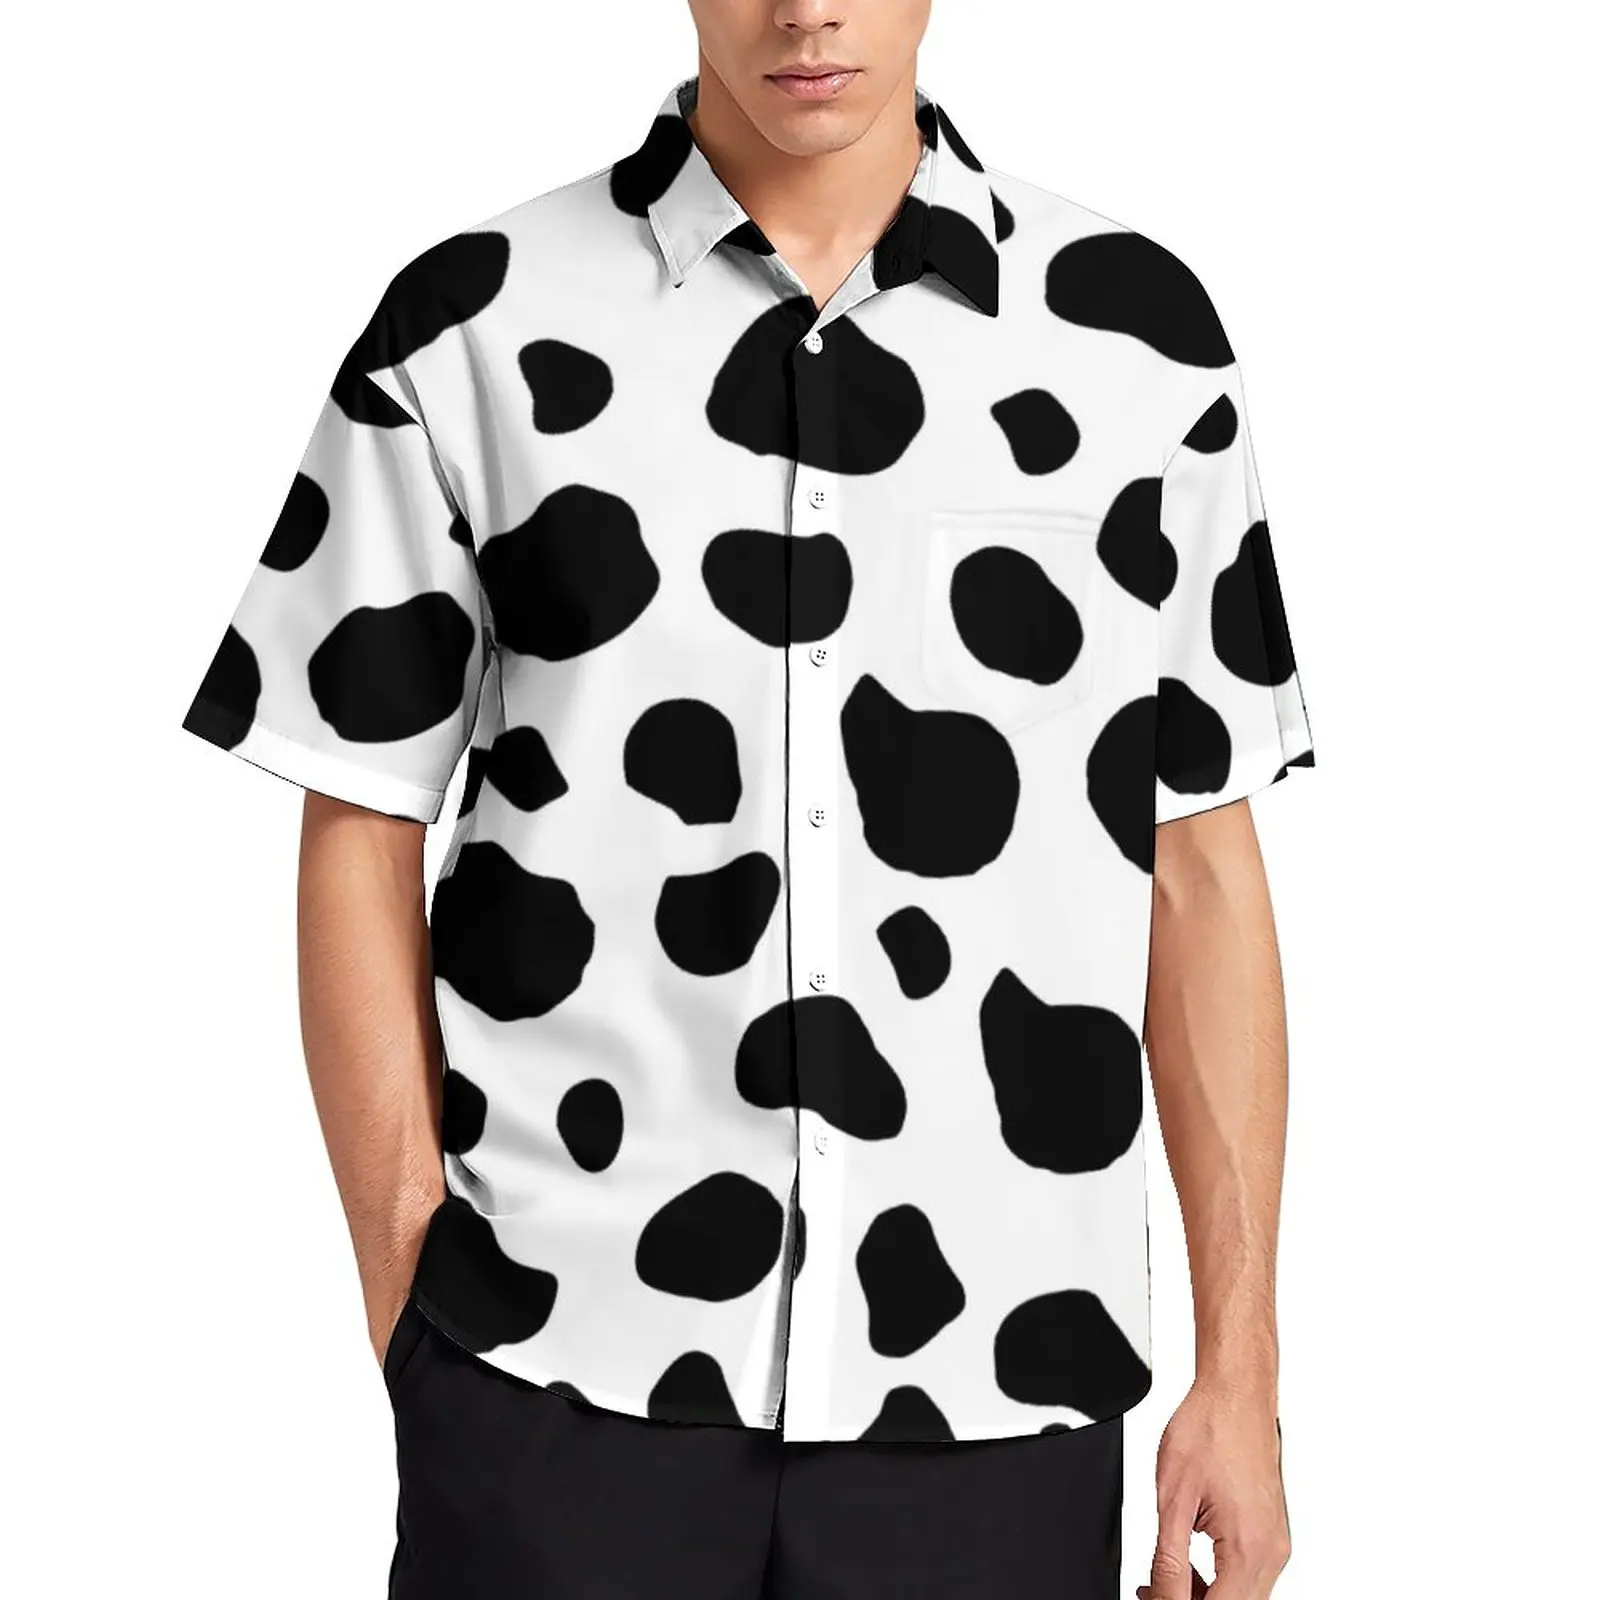 

Пляжная рубашка с принтом коровы, мужские черно-белые повседневные рубашки с животными, Гавайские блузки с графическим принтом, крутая одеж...